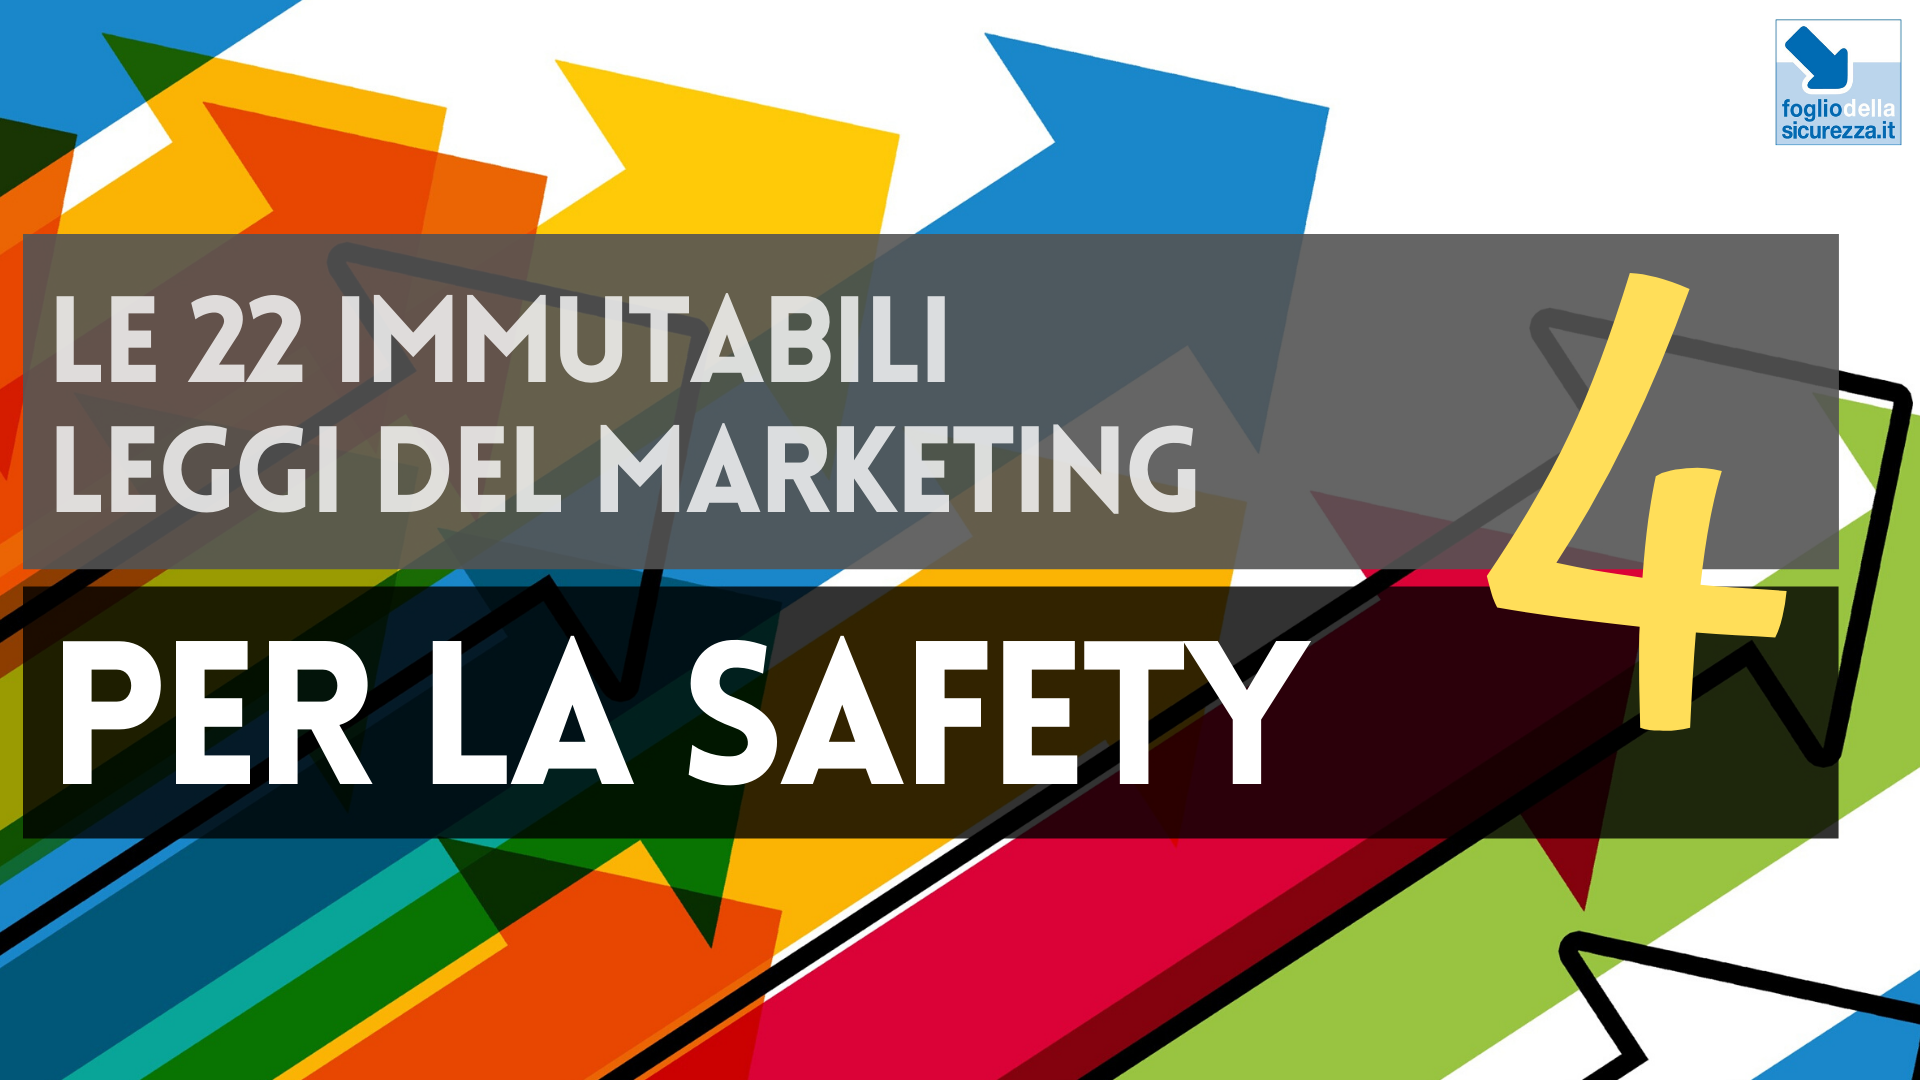 Le 22 immutabili leggi del marketing per la safety 04